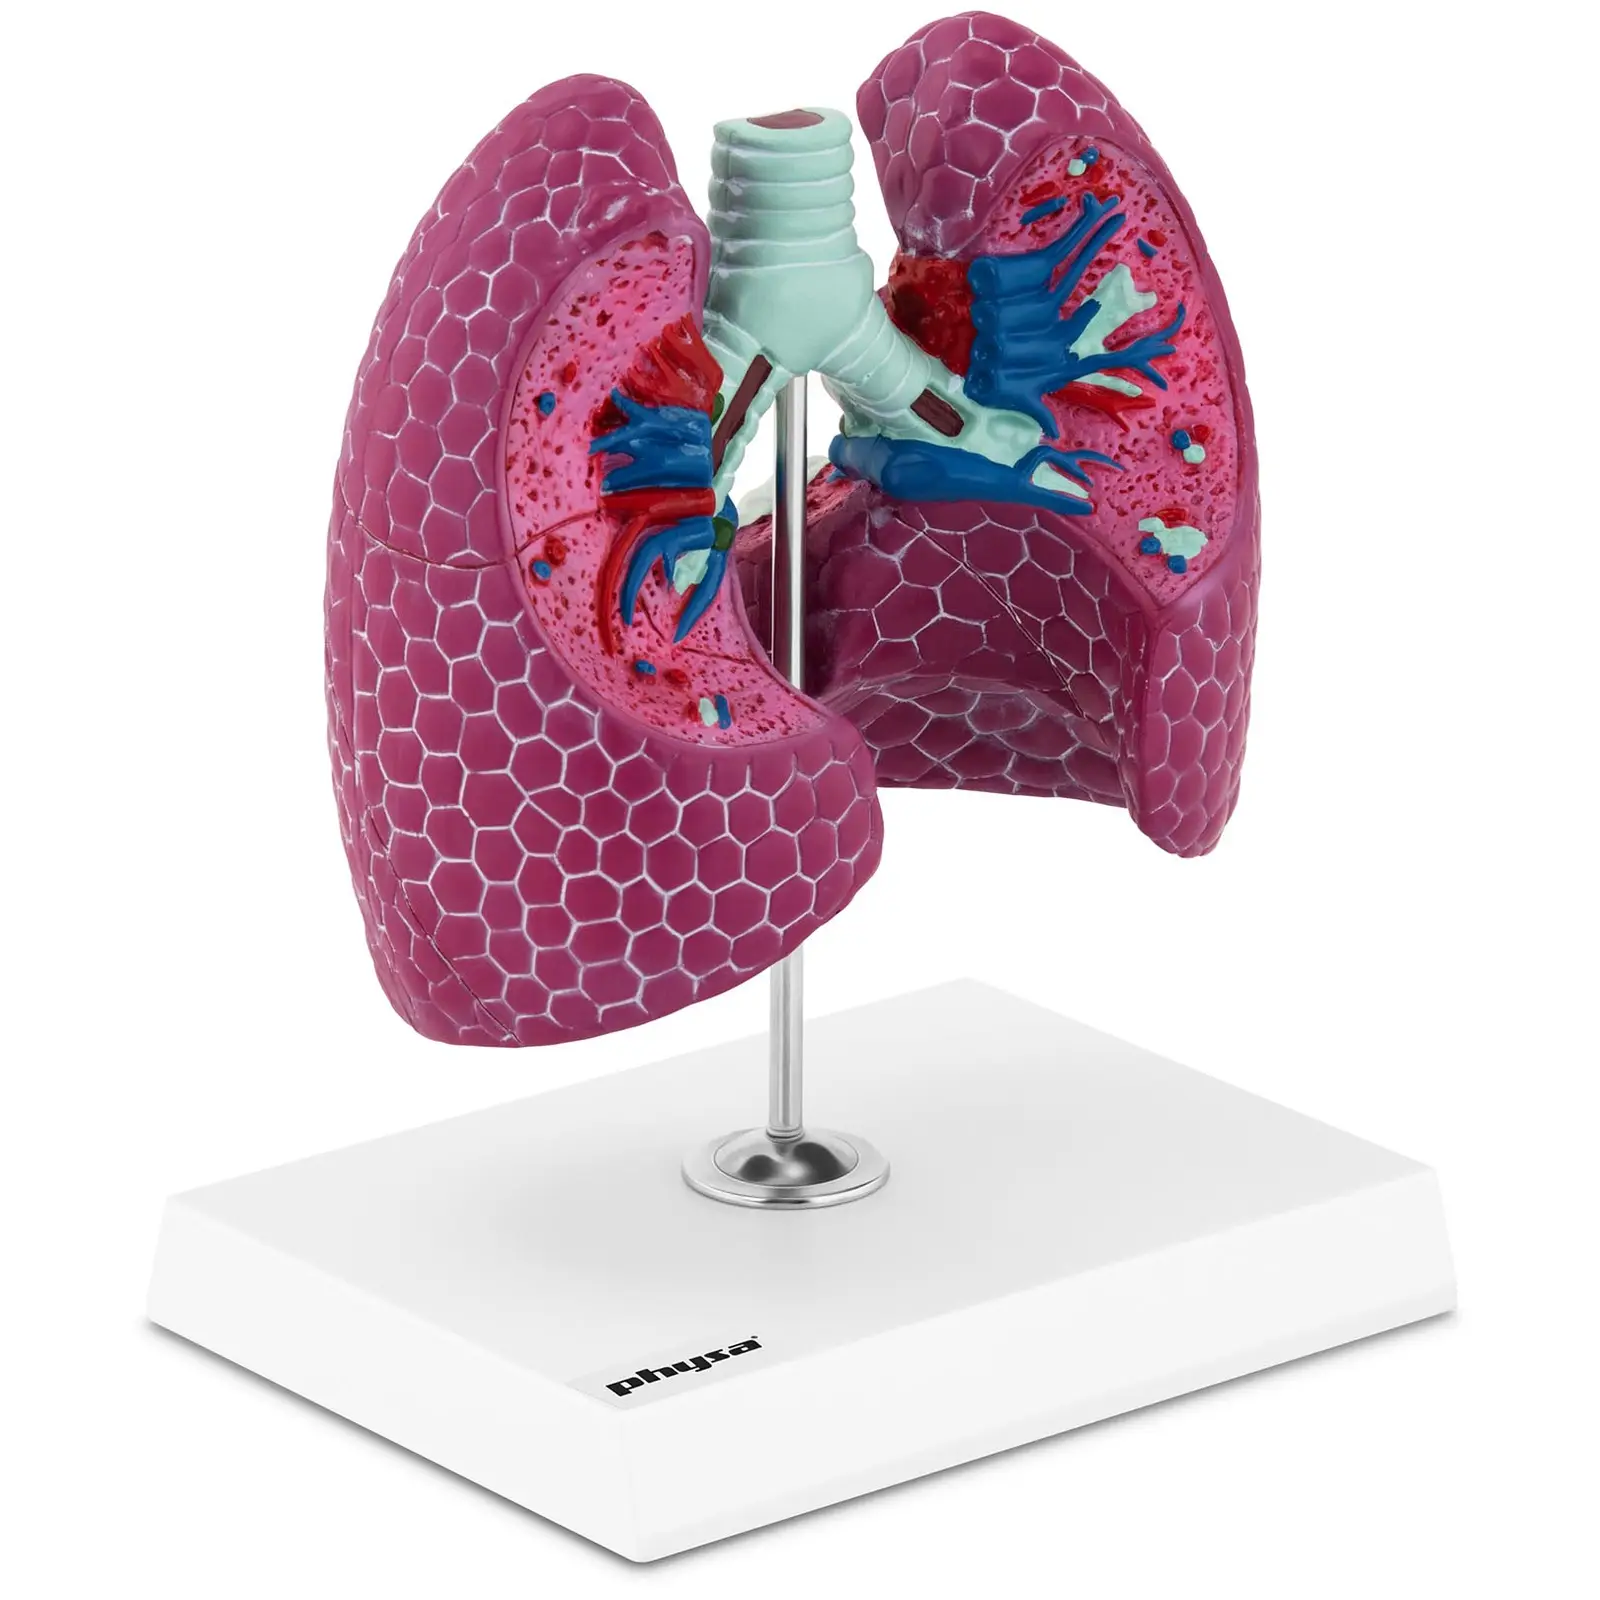 Anatominen malli sairaista keuhkoista